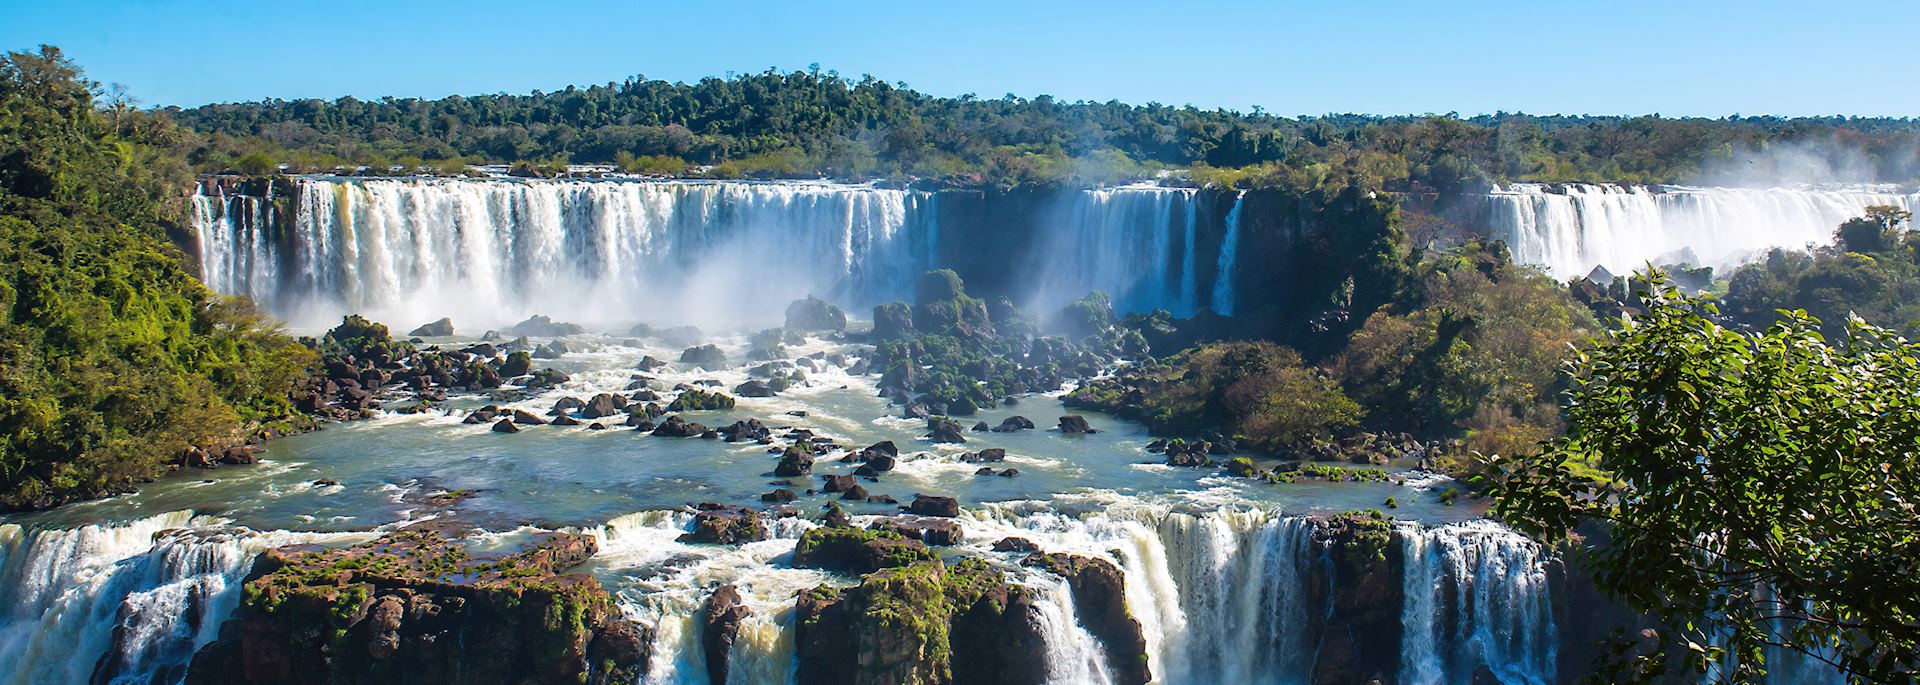 Iguaçu Falls in Brazil